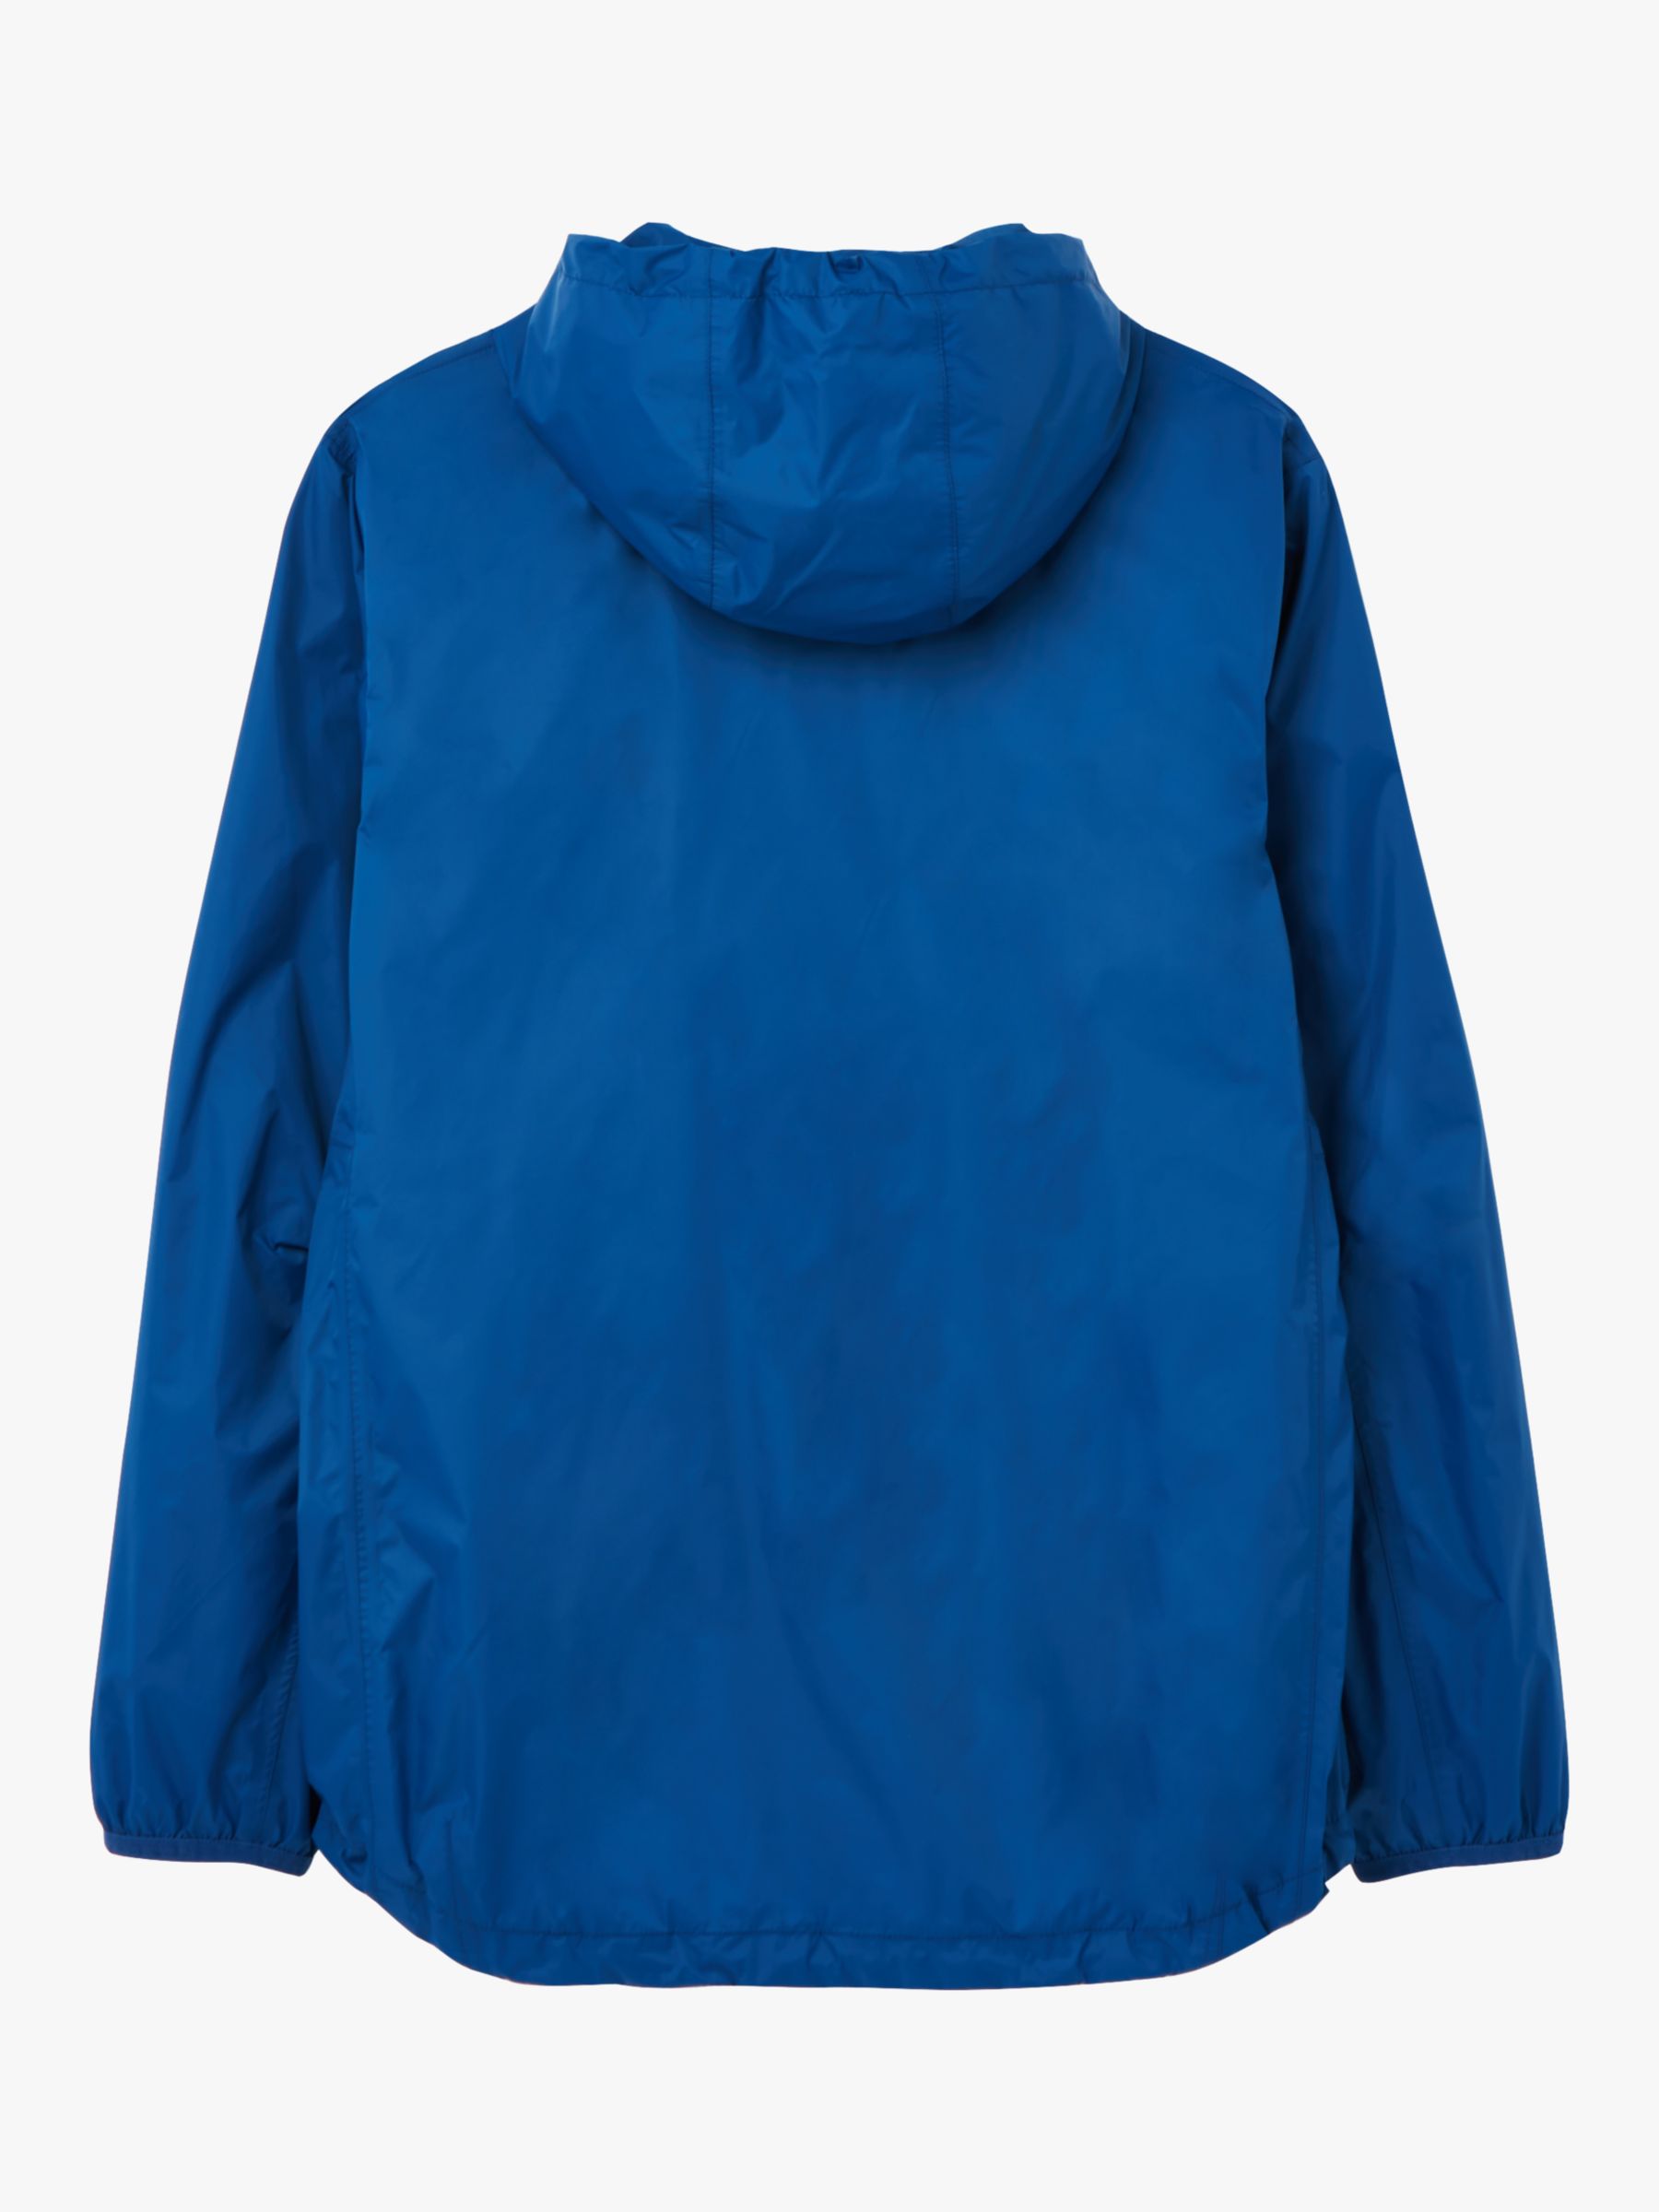 Joules Arlow Lightweight Waterproof Jacket, Blue at John Lewis & Partners